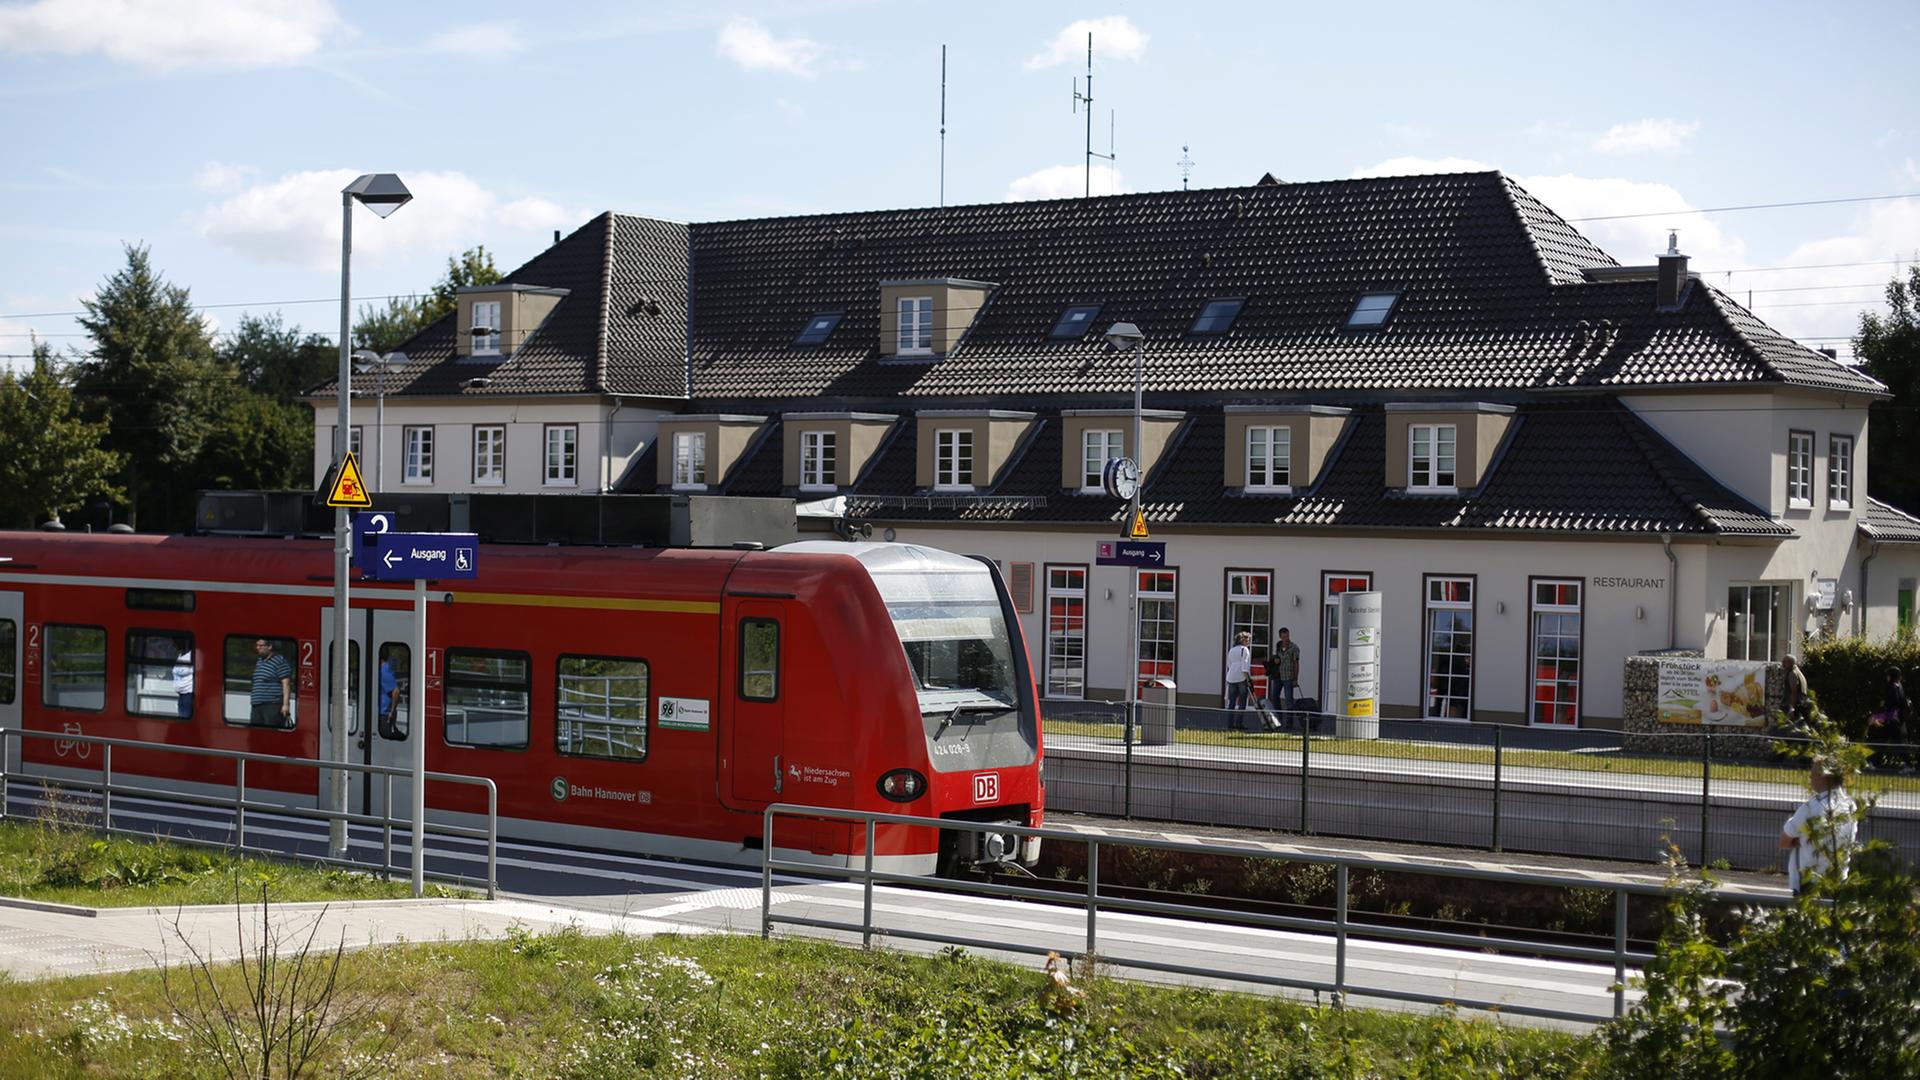 Eine S-Bahn hält am Bahnhof Steinheim (Nordrhein-Westfalen) am 17.08.2016. Die Auszeichnung "Bahnhof des Jahres 2016" wird an den Bahnhof Steinheim vergeben. Foto: Ina Fassbender/dpa (zu dpa vom 22.08.2016)